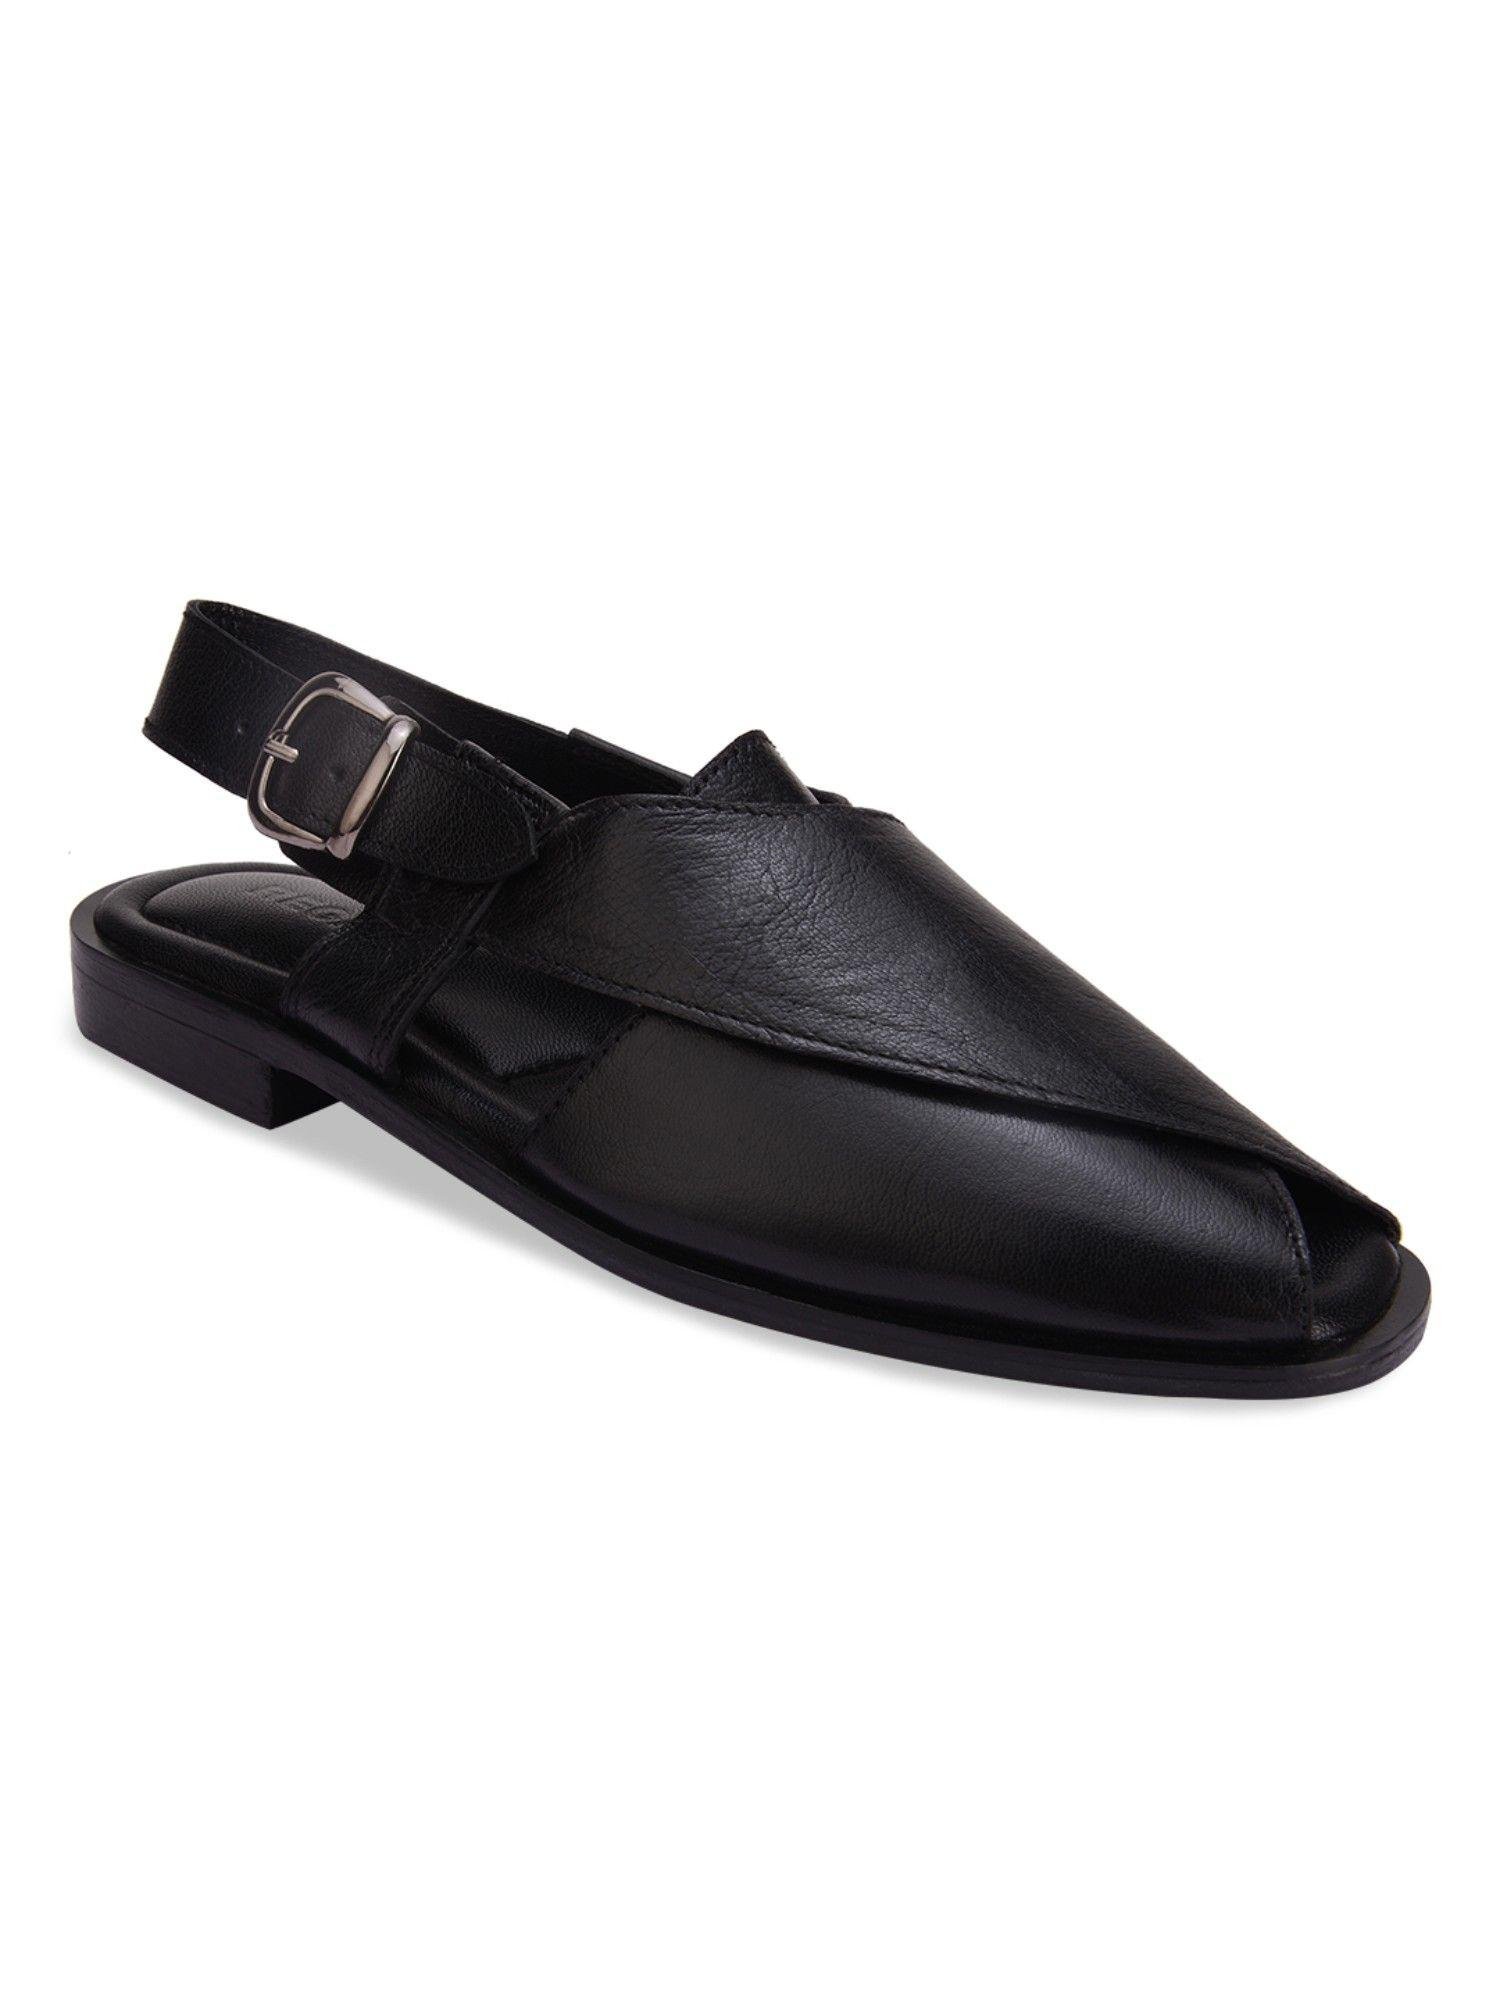 black-men-solid-leather-ethnic-sandals